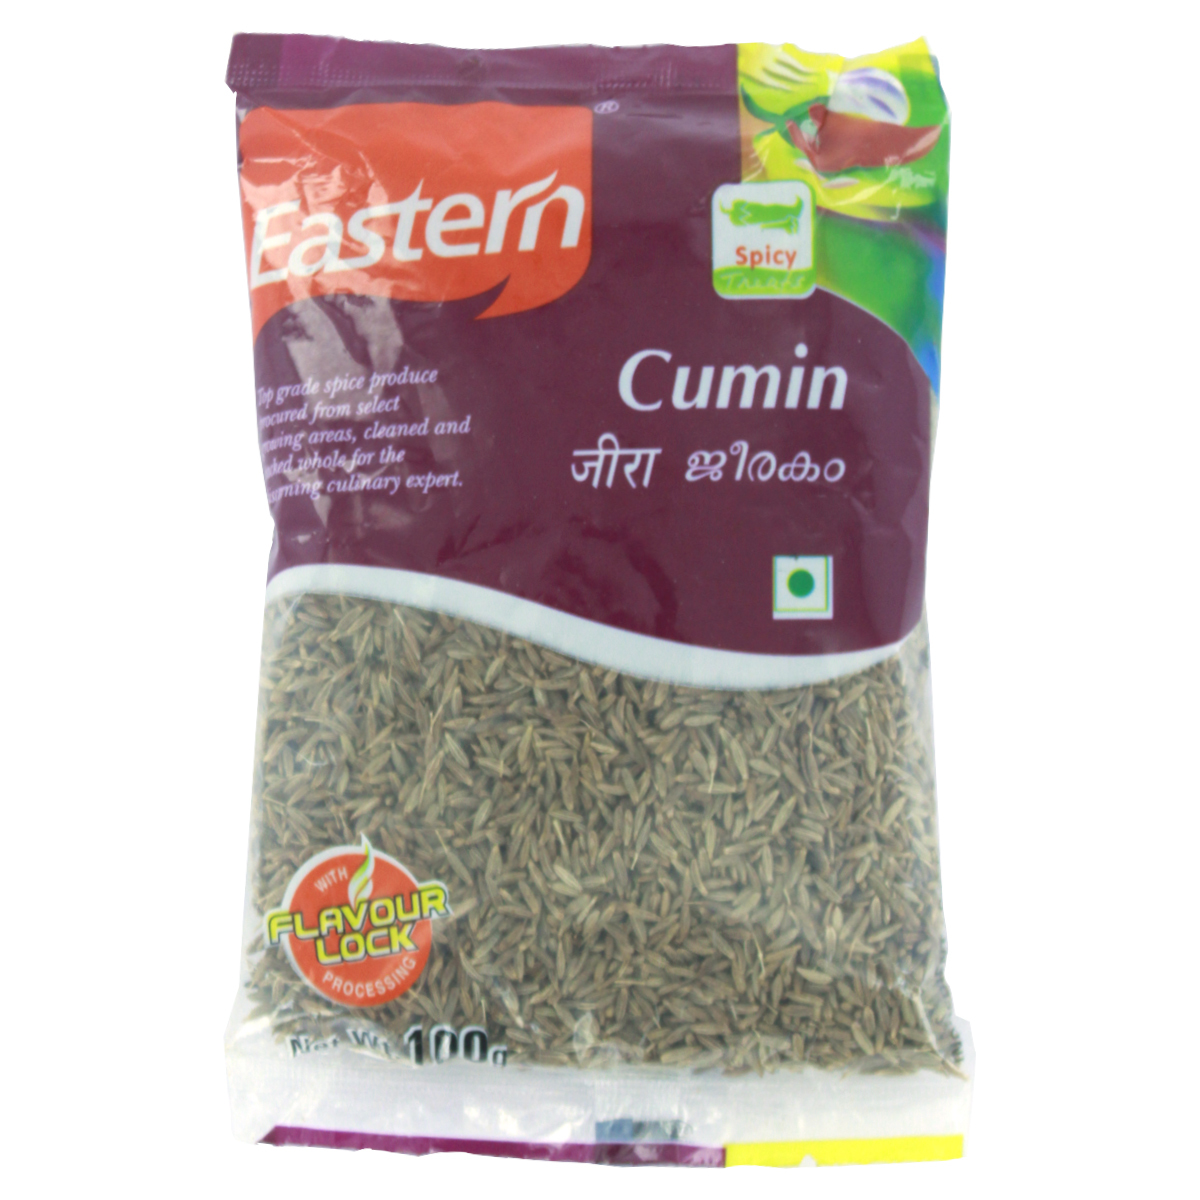 Eastern Cumin Seed 100g